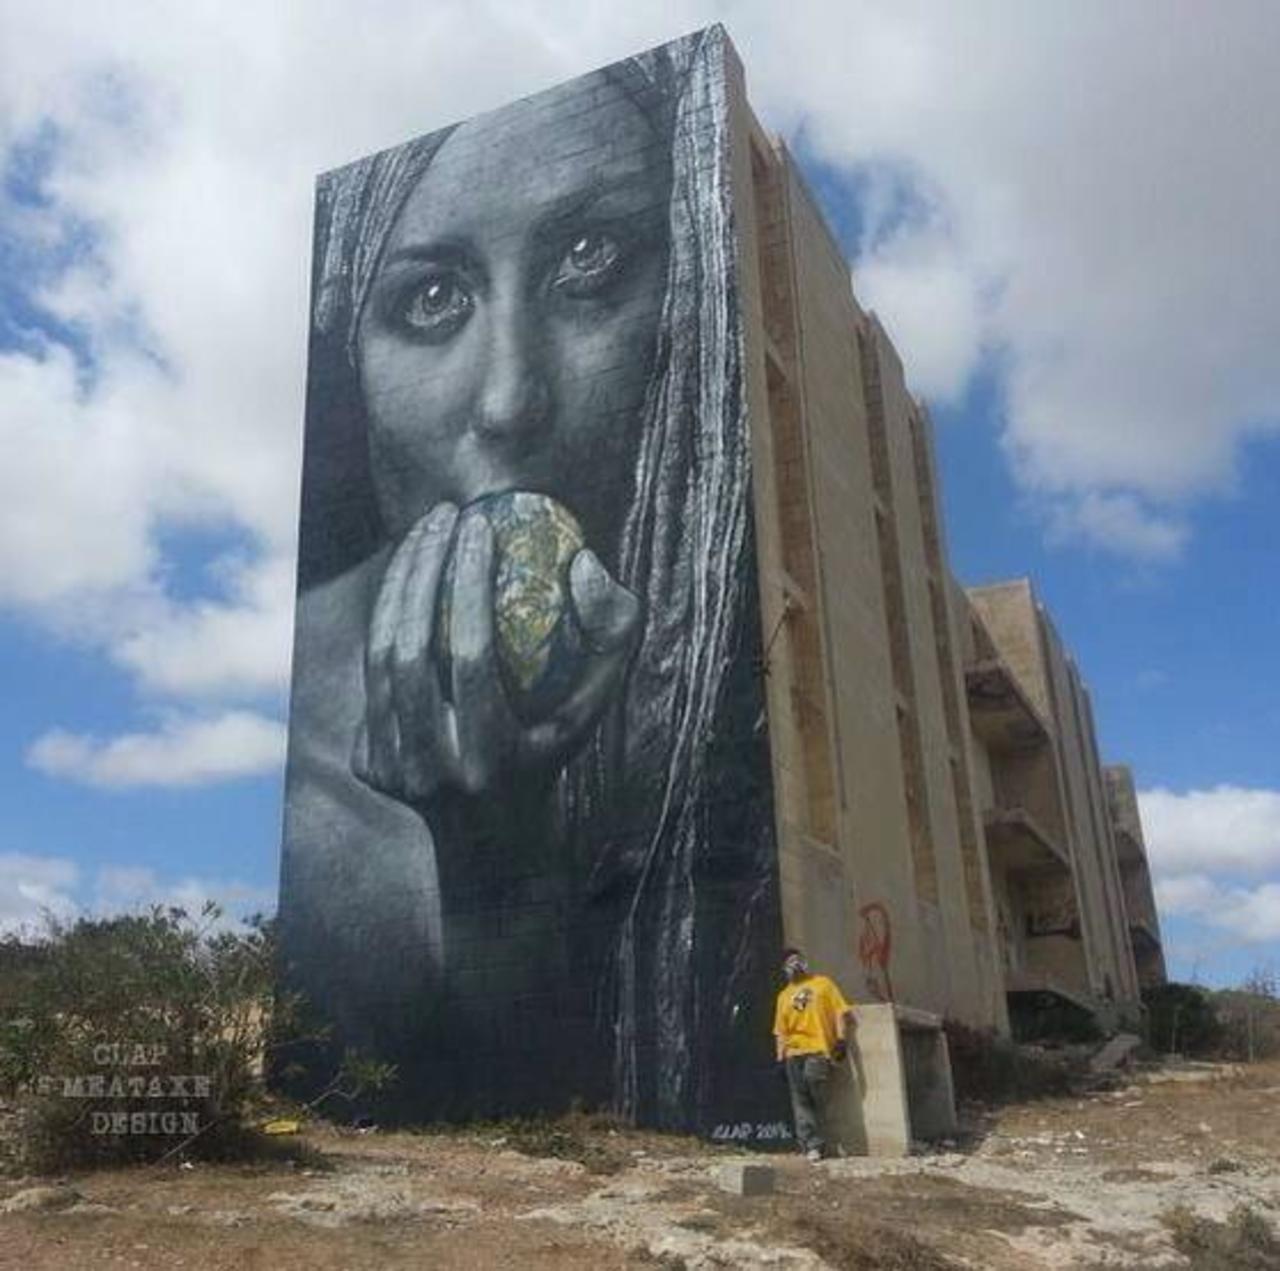 RT @designopinion: Artist Meataxe new awesome large scale Street Art mural in Malta #art #graffiti #mural #streetart https://t.co/E6z9GtPfe3